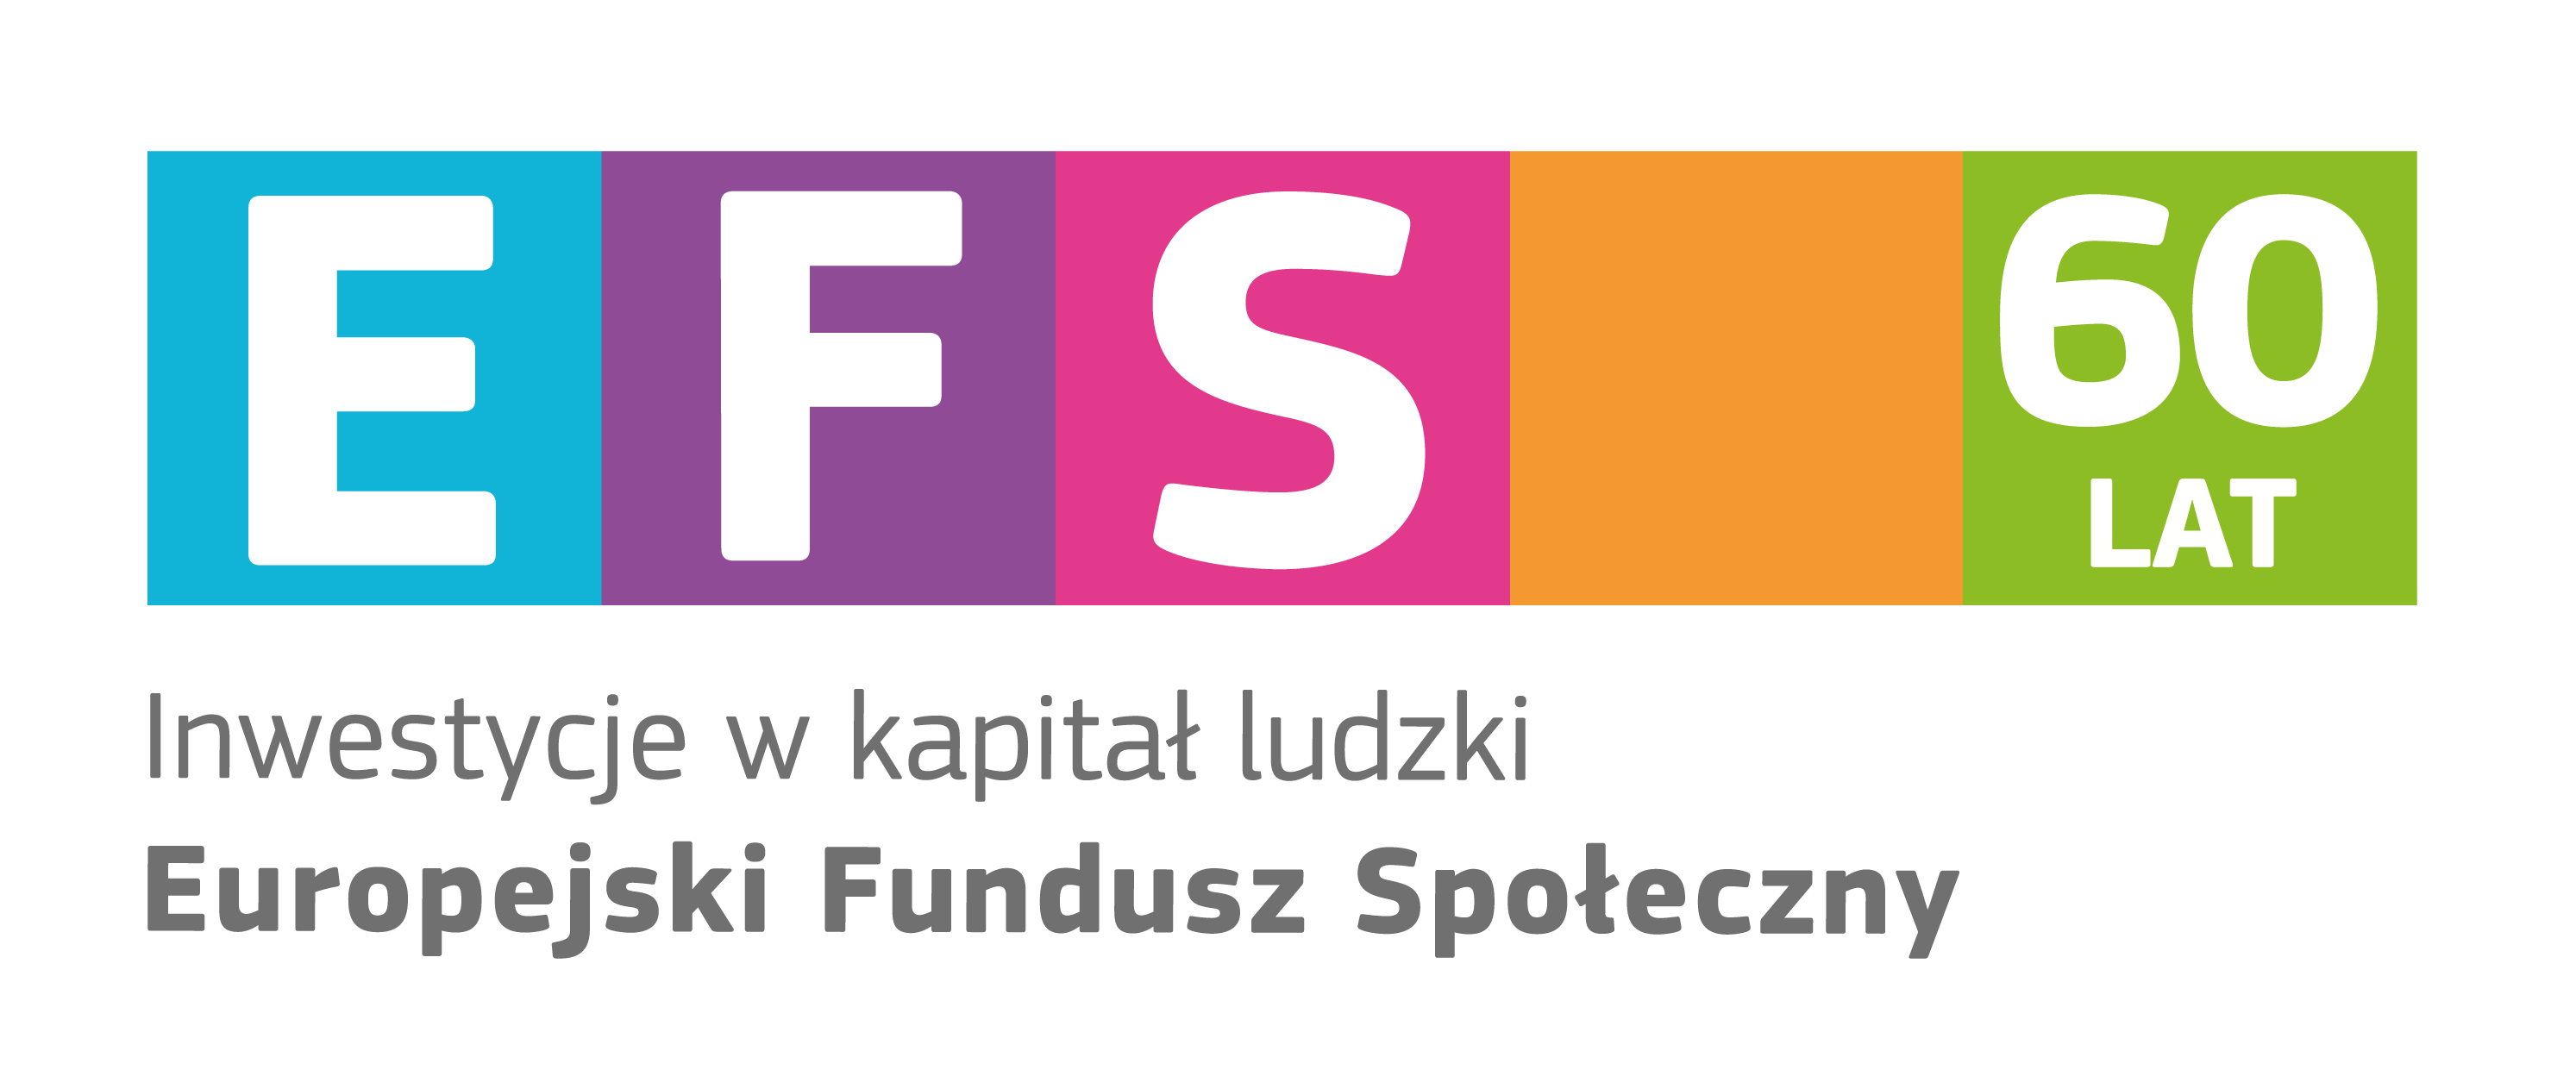 Logotyp sześćdziesięciolecia Europejskiego Funduszu Społecznego z hasłem przewodnim: "Inwestycje w kapitał ludzki".